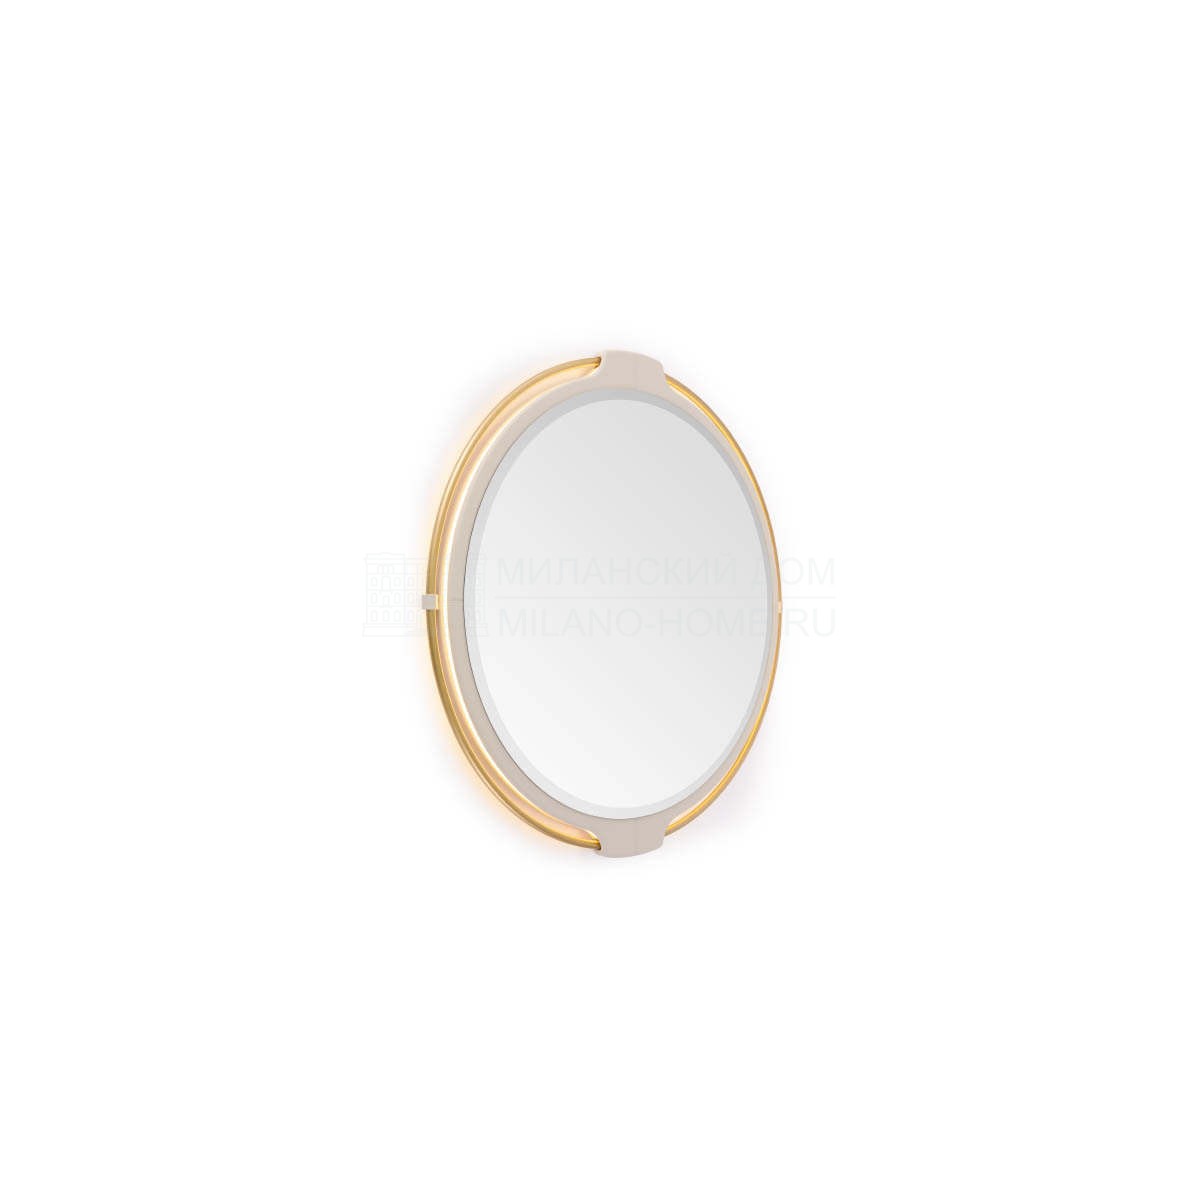 Зеркало настенное Vine round mirror из Италии фабрики TURRI